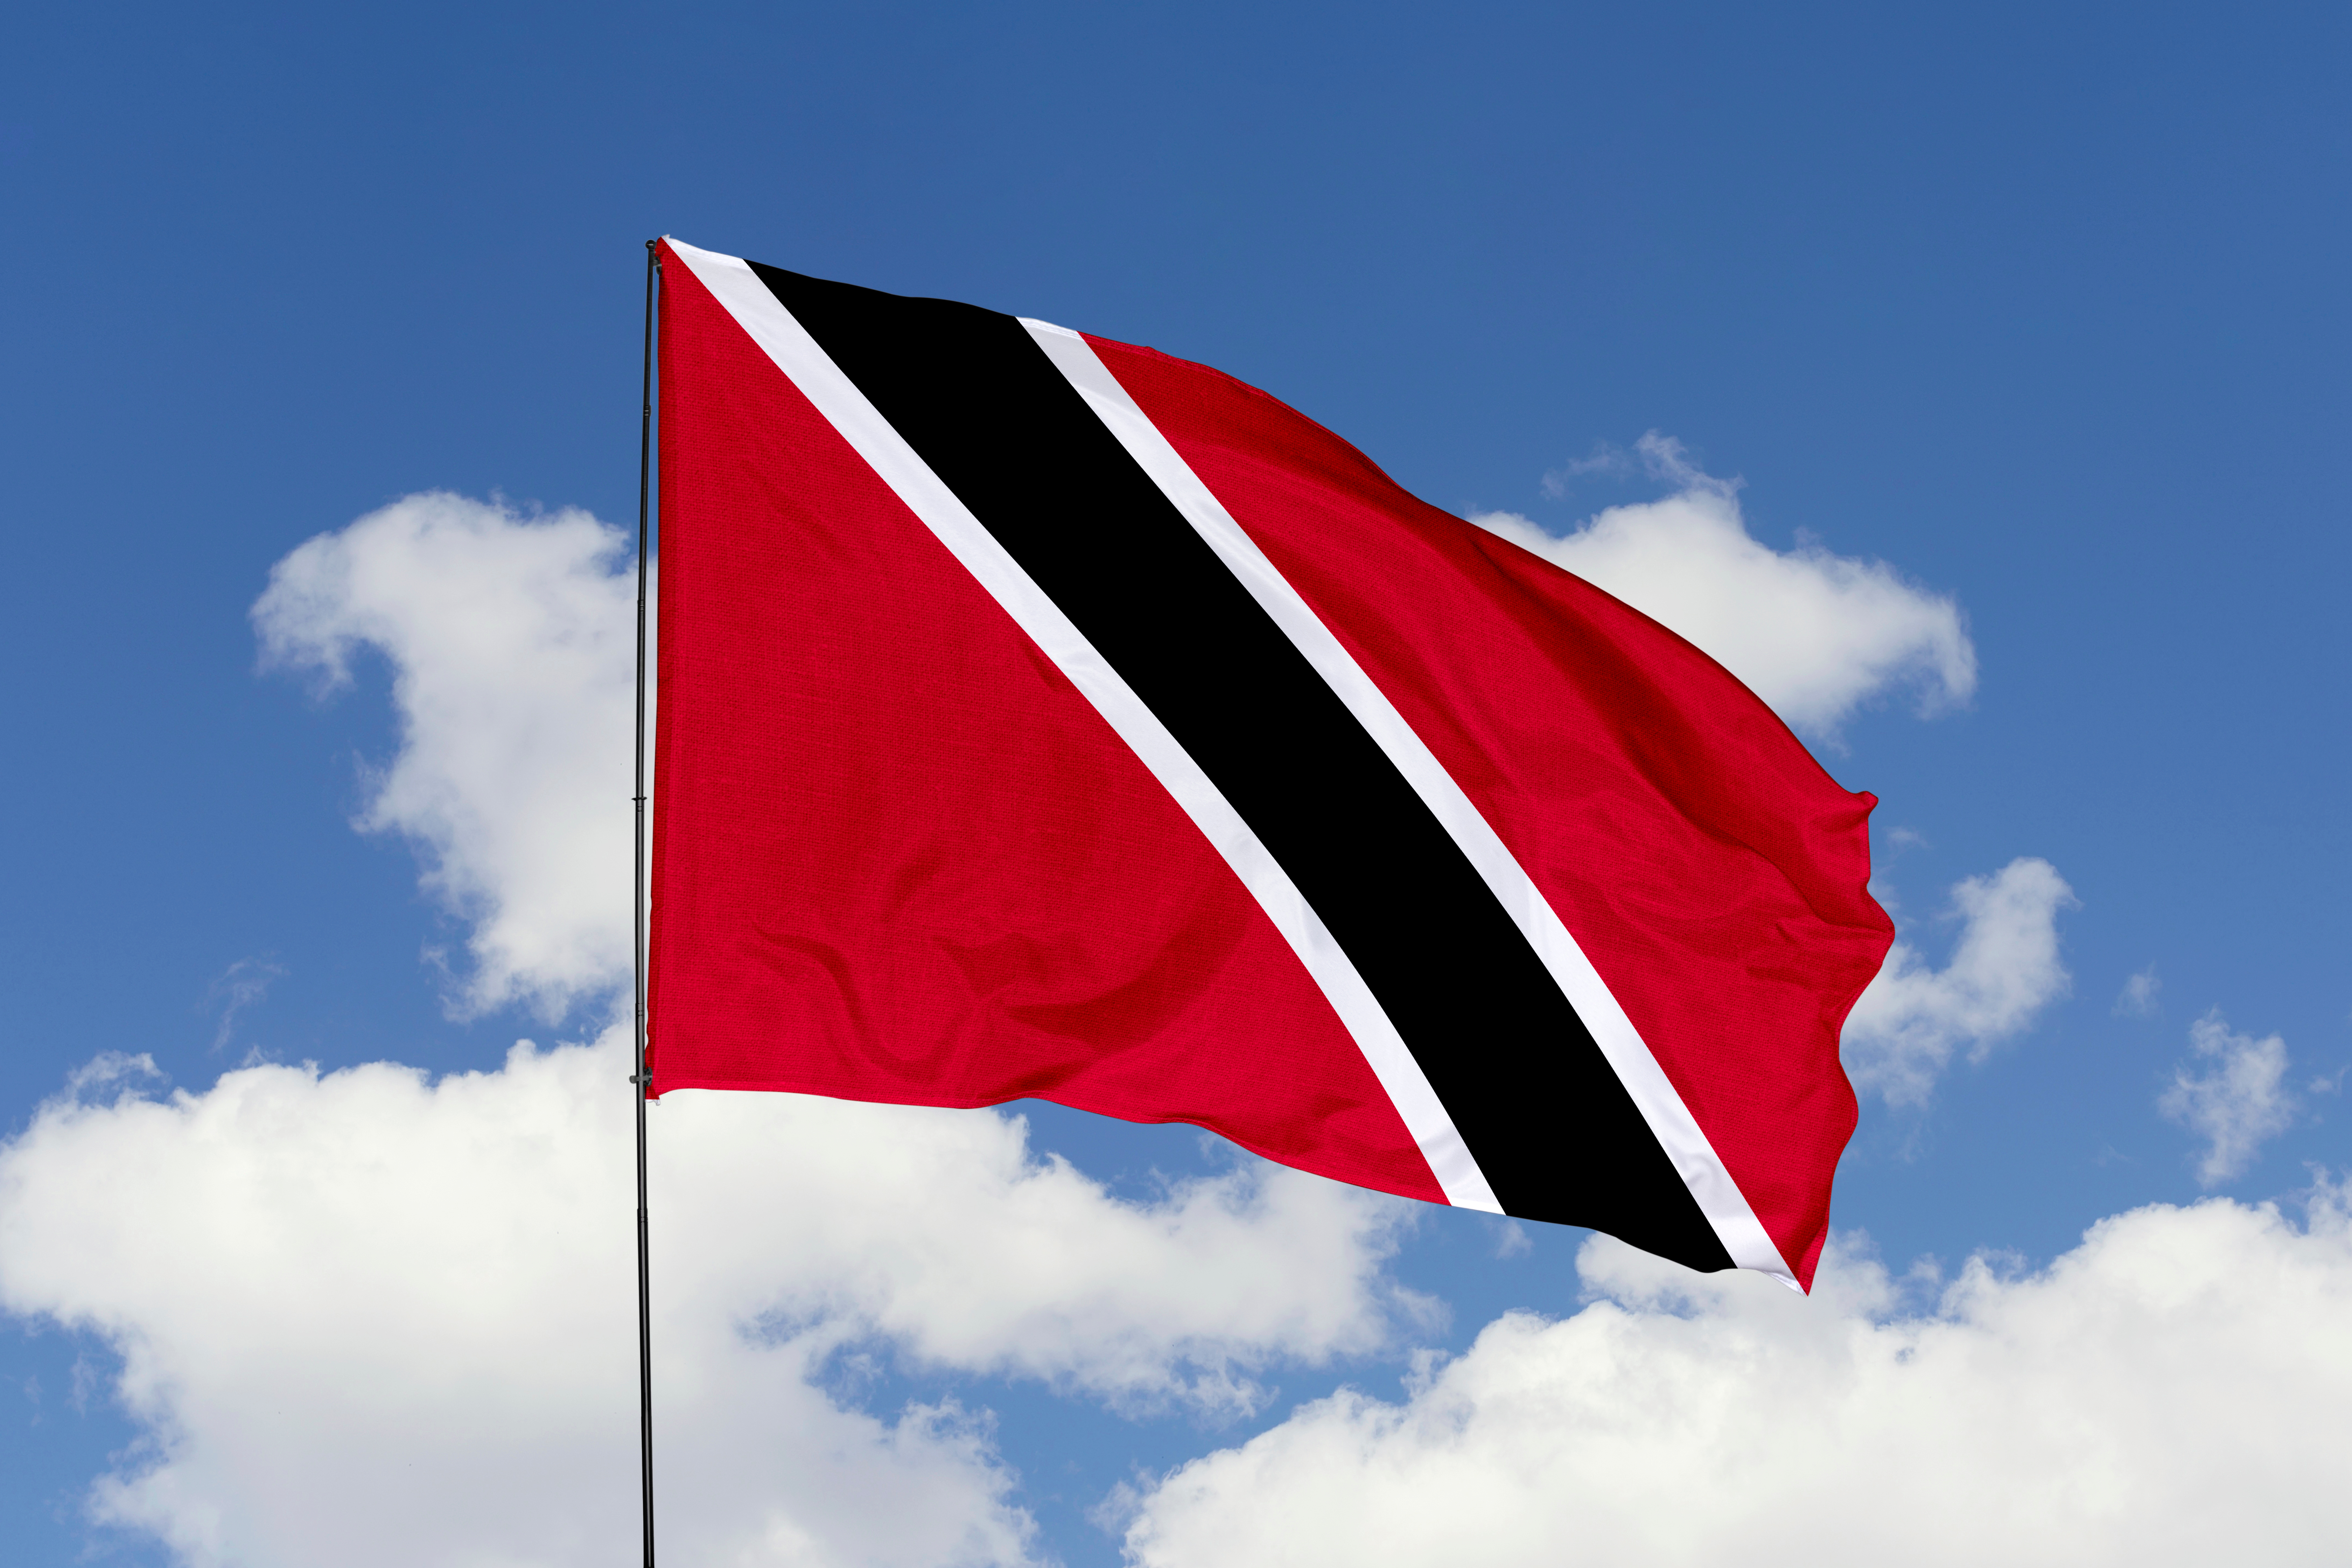     Pêche illicite : l’Europe adresse un « carton rouge » à Trinité-et-Tobago 

